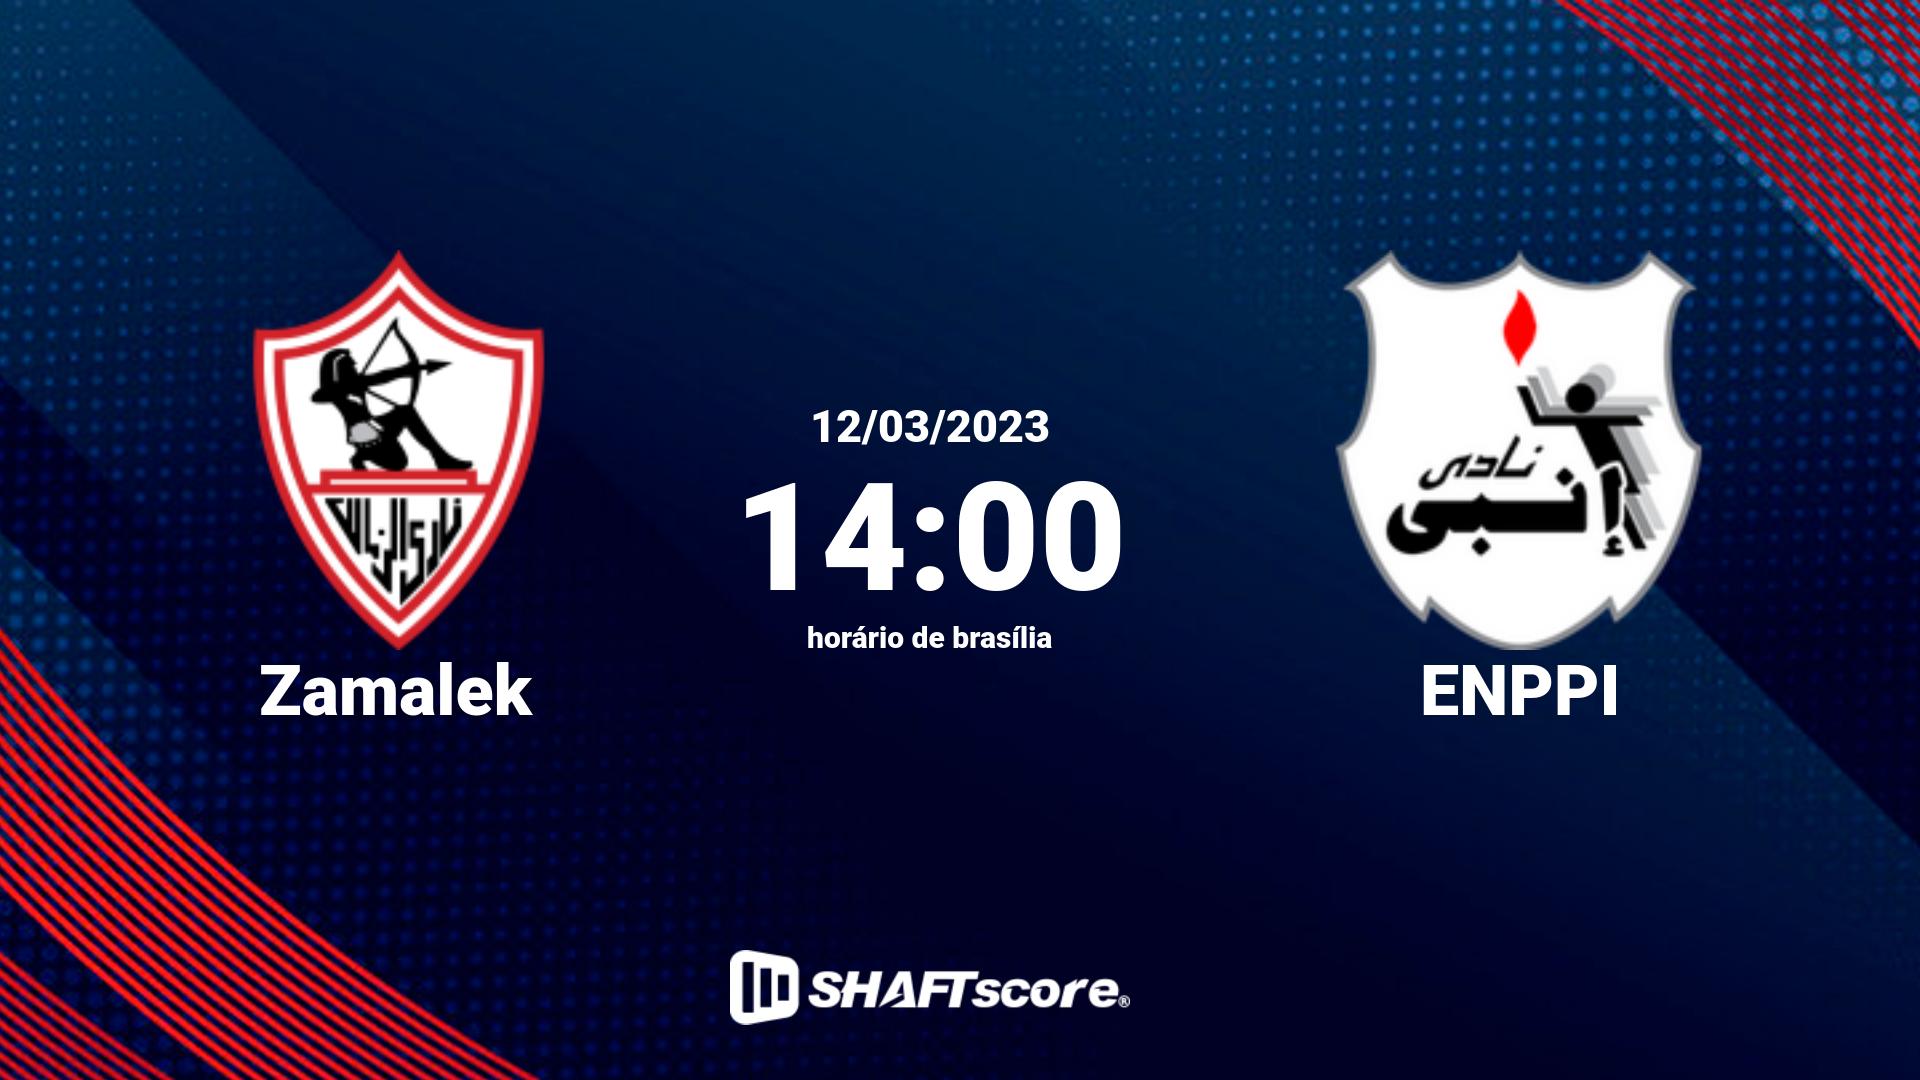 Estatísticas do jogo Zamalek vs ENPPI 12.03 14:00